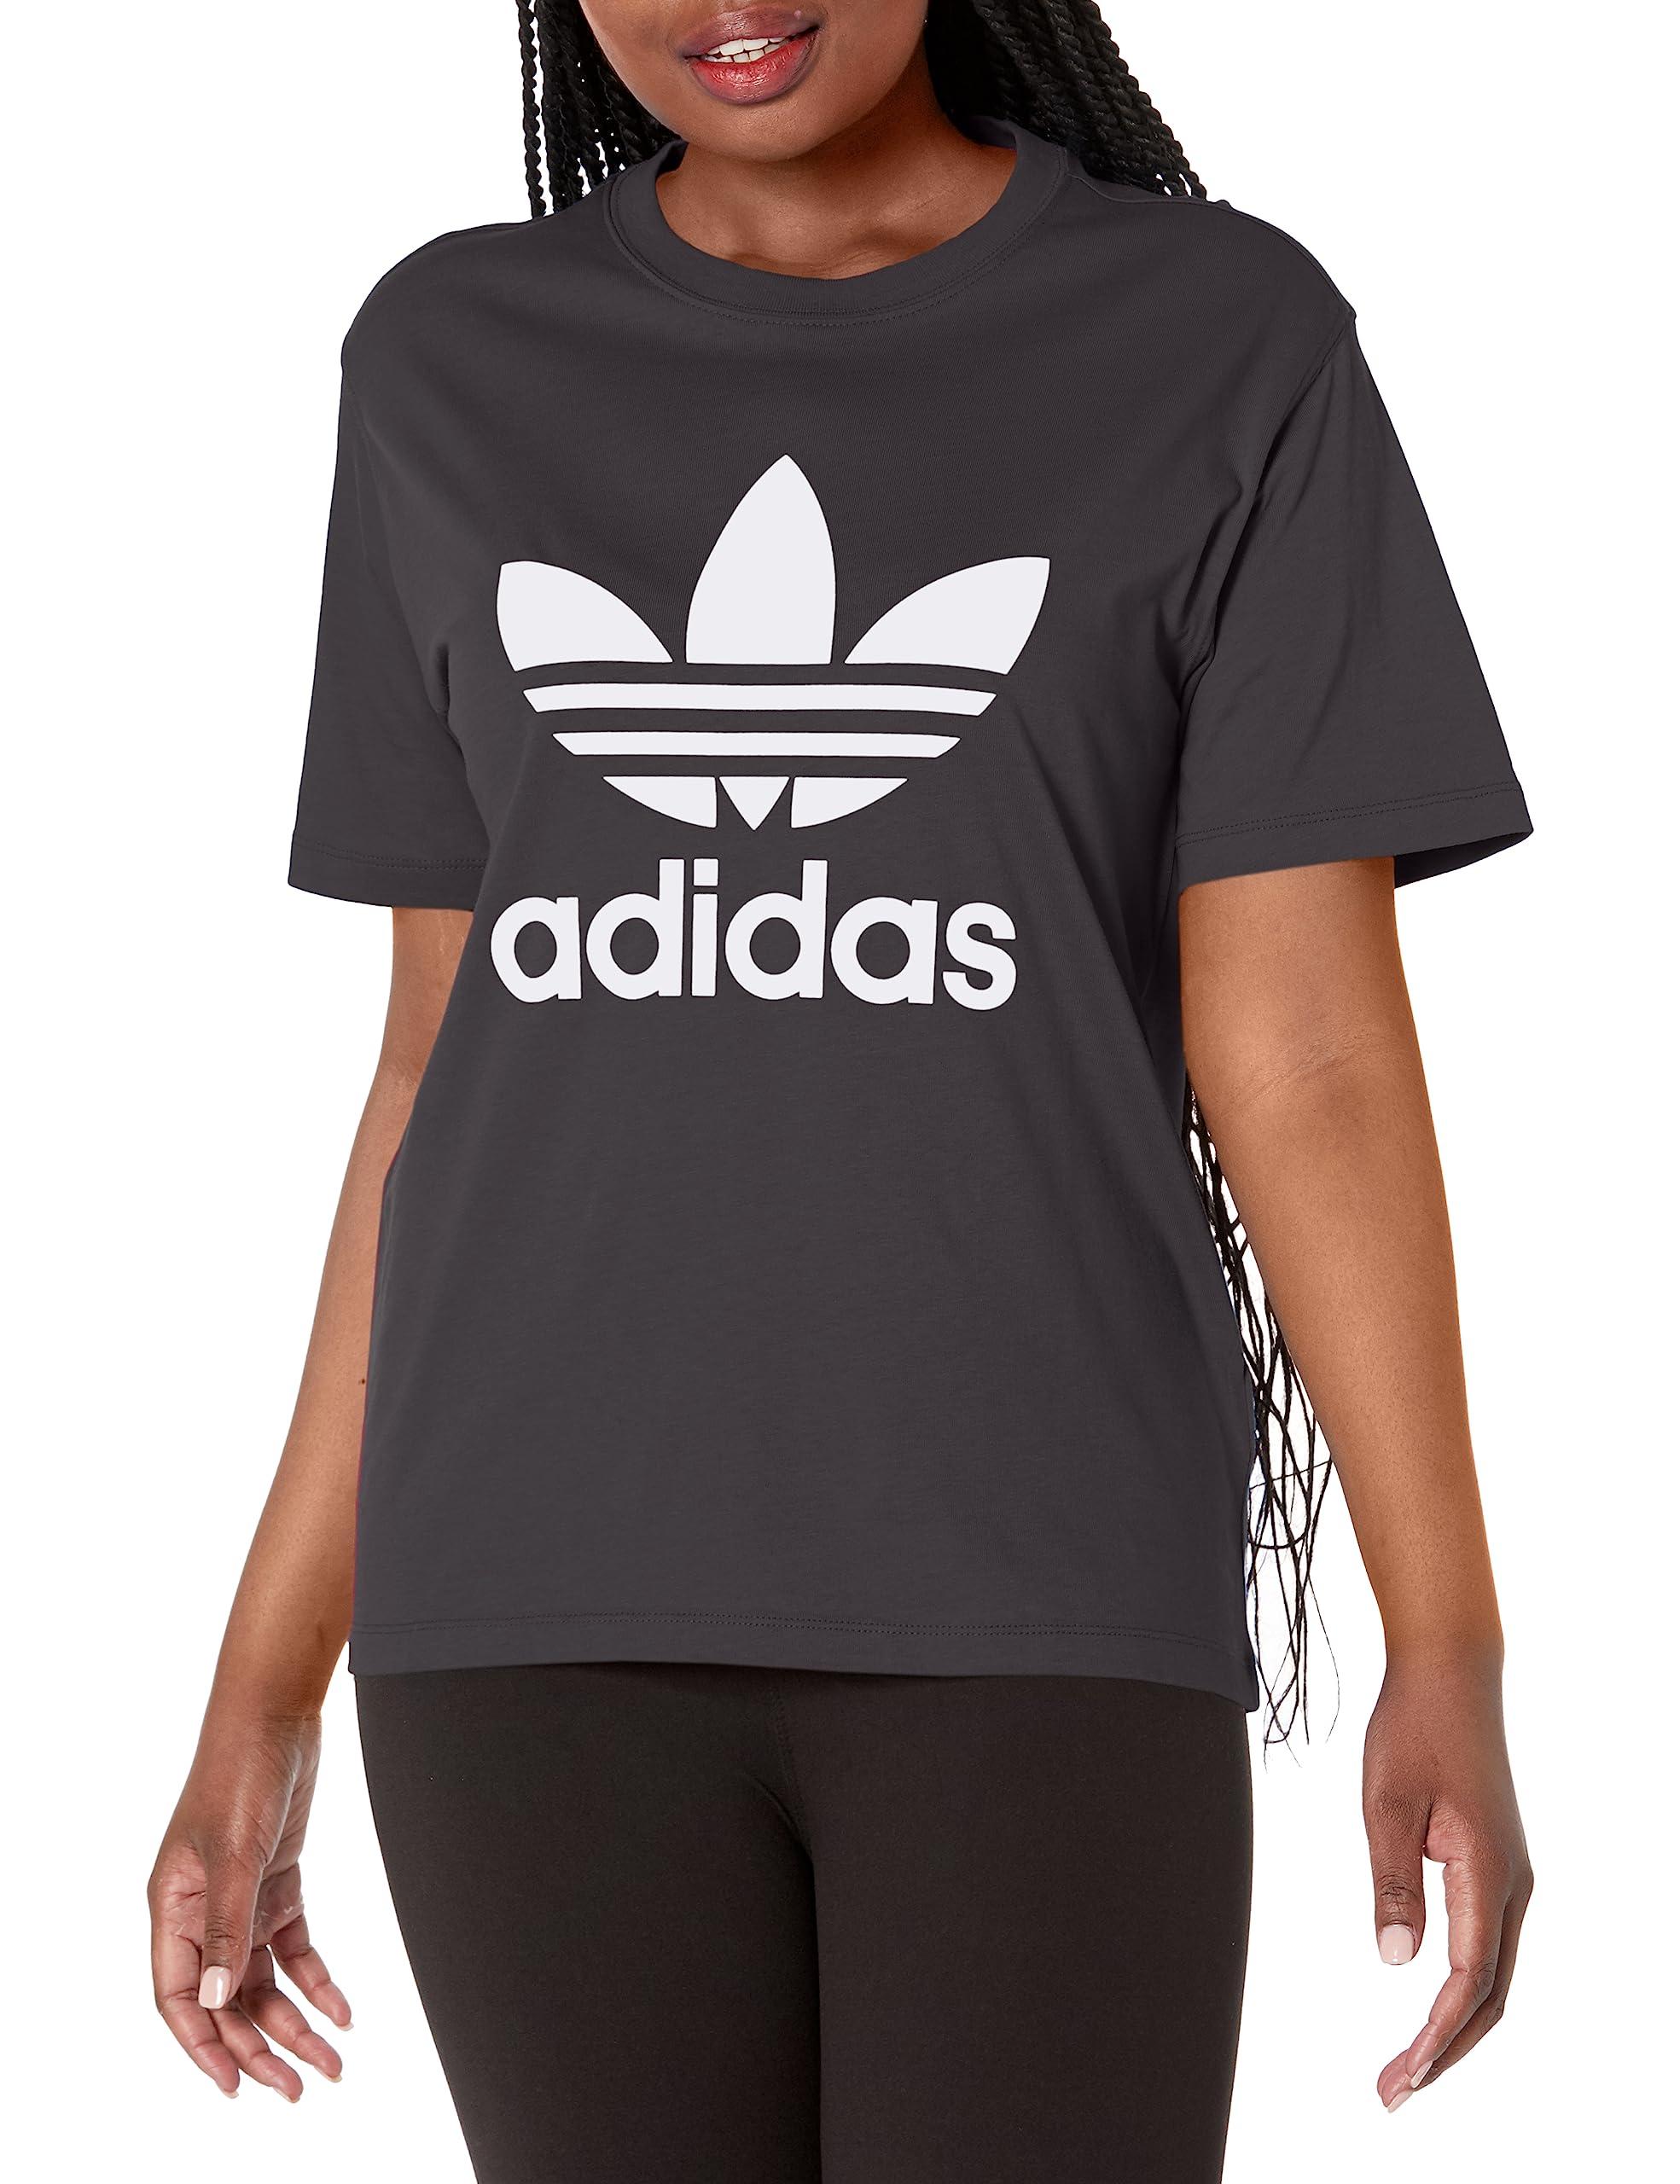 adidas Originals Adicolor Classics Trefoil T-shirt in Black | Lyst